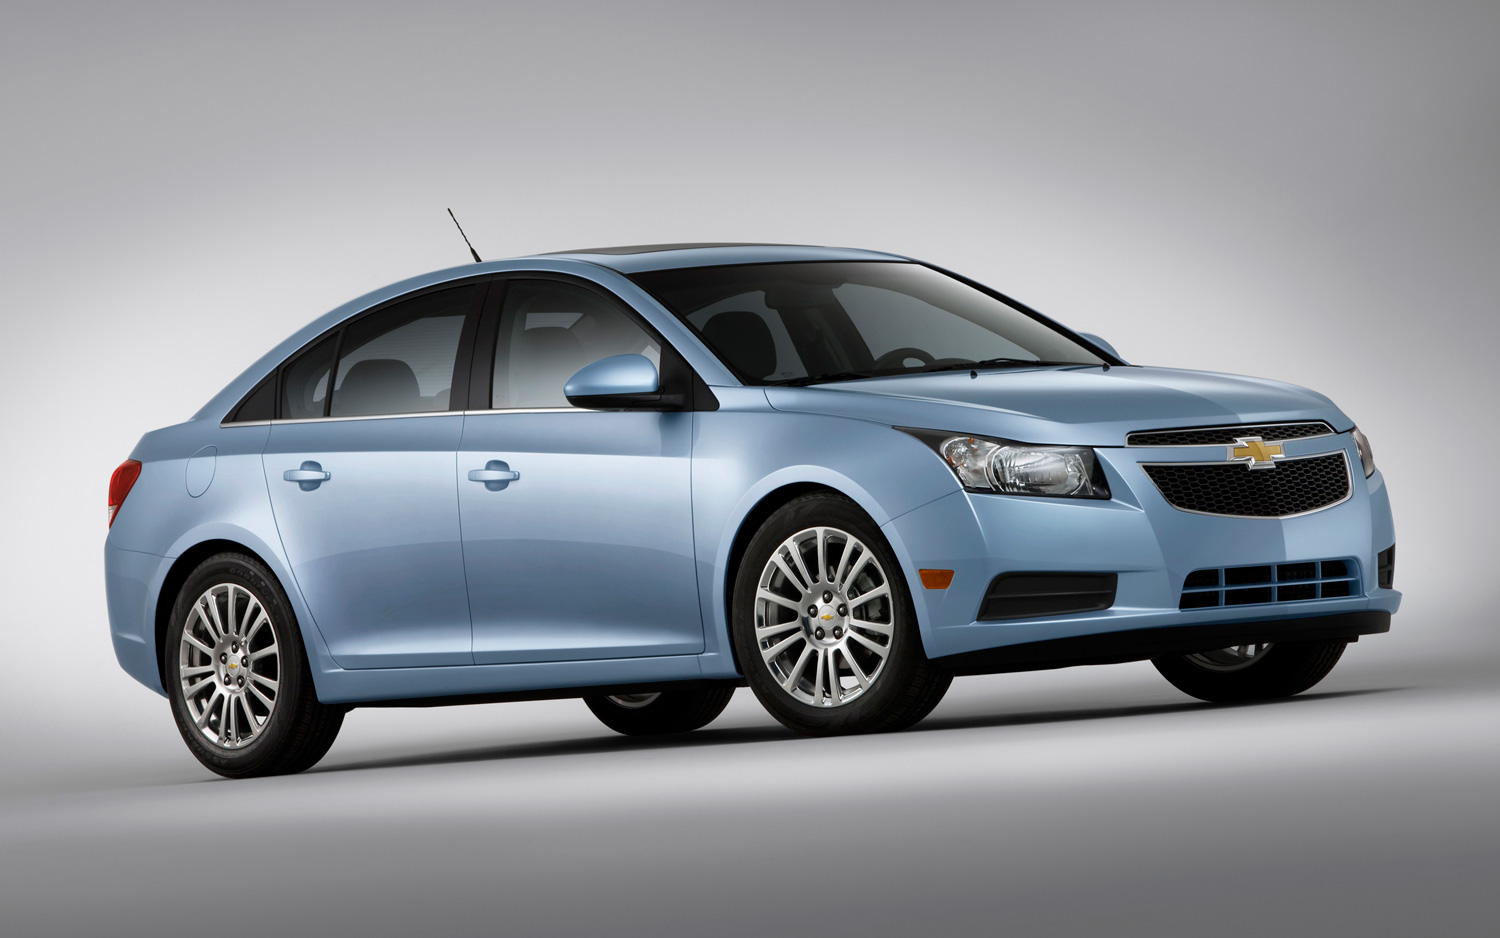 New Car Models: 2013 Chevrolet cruze